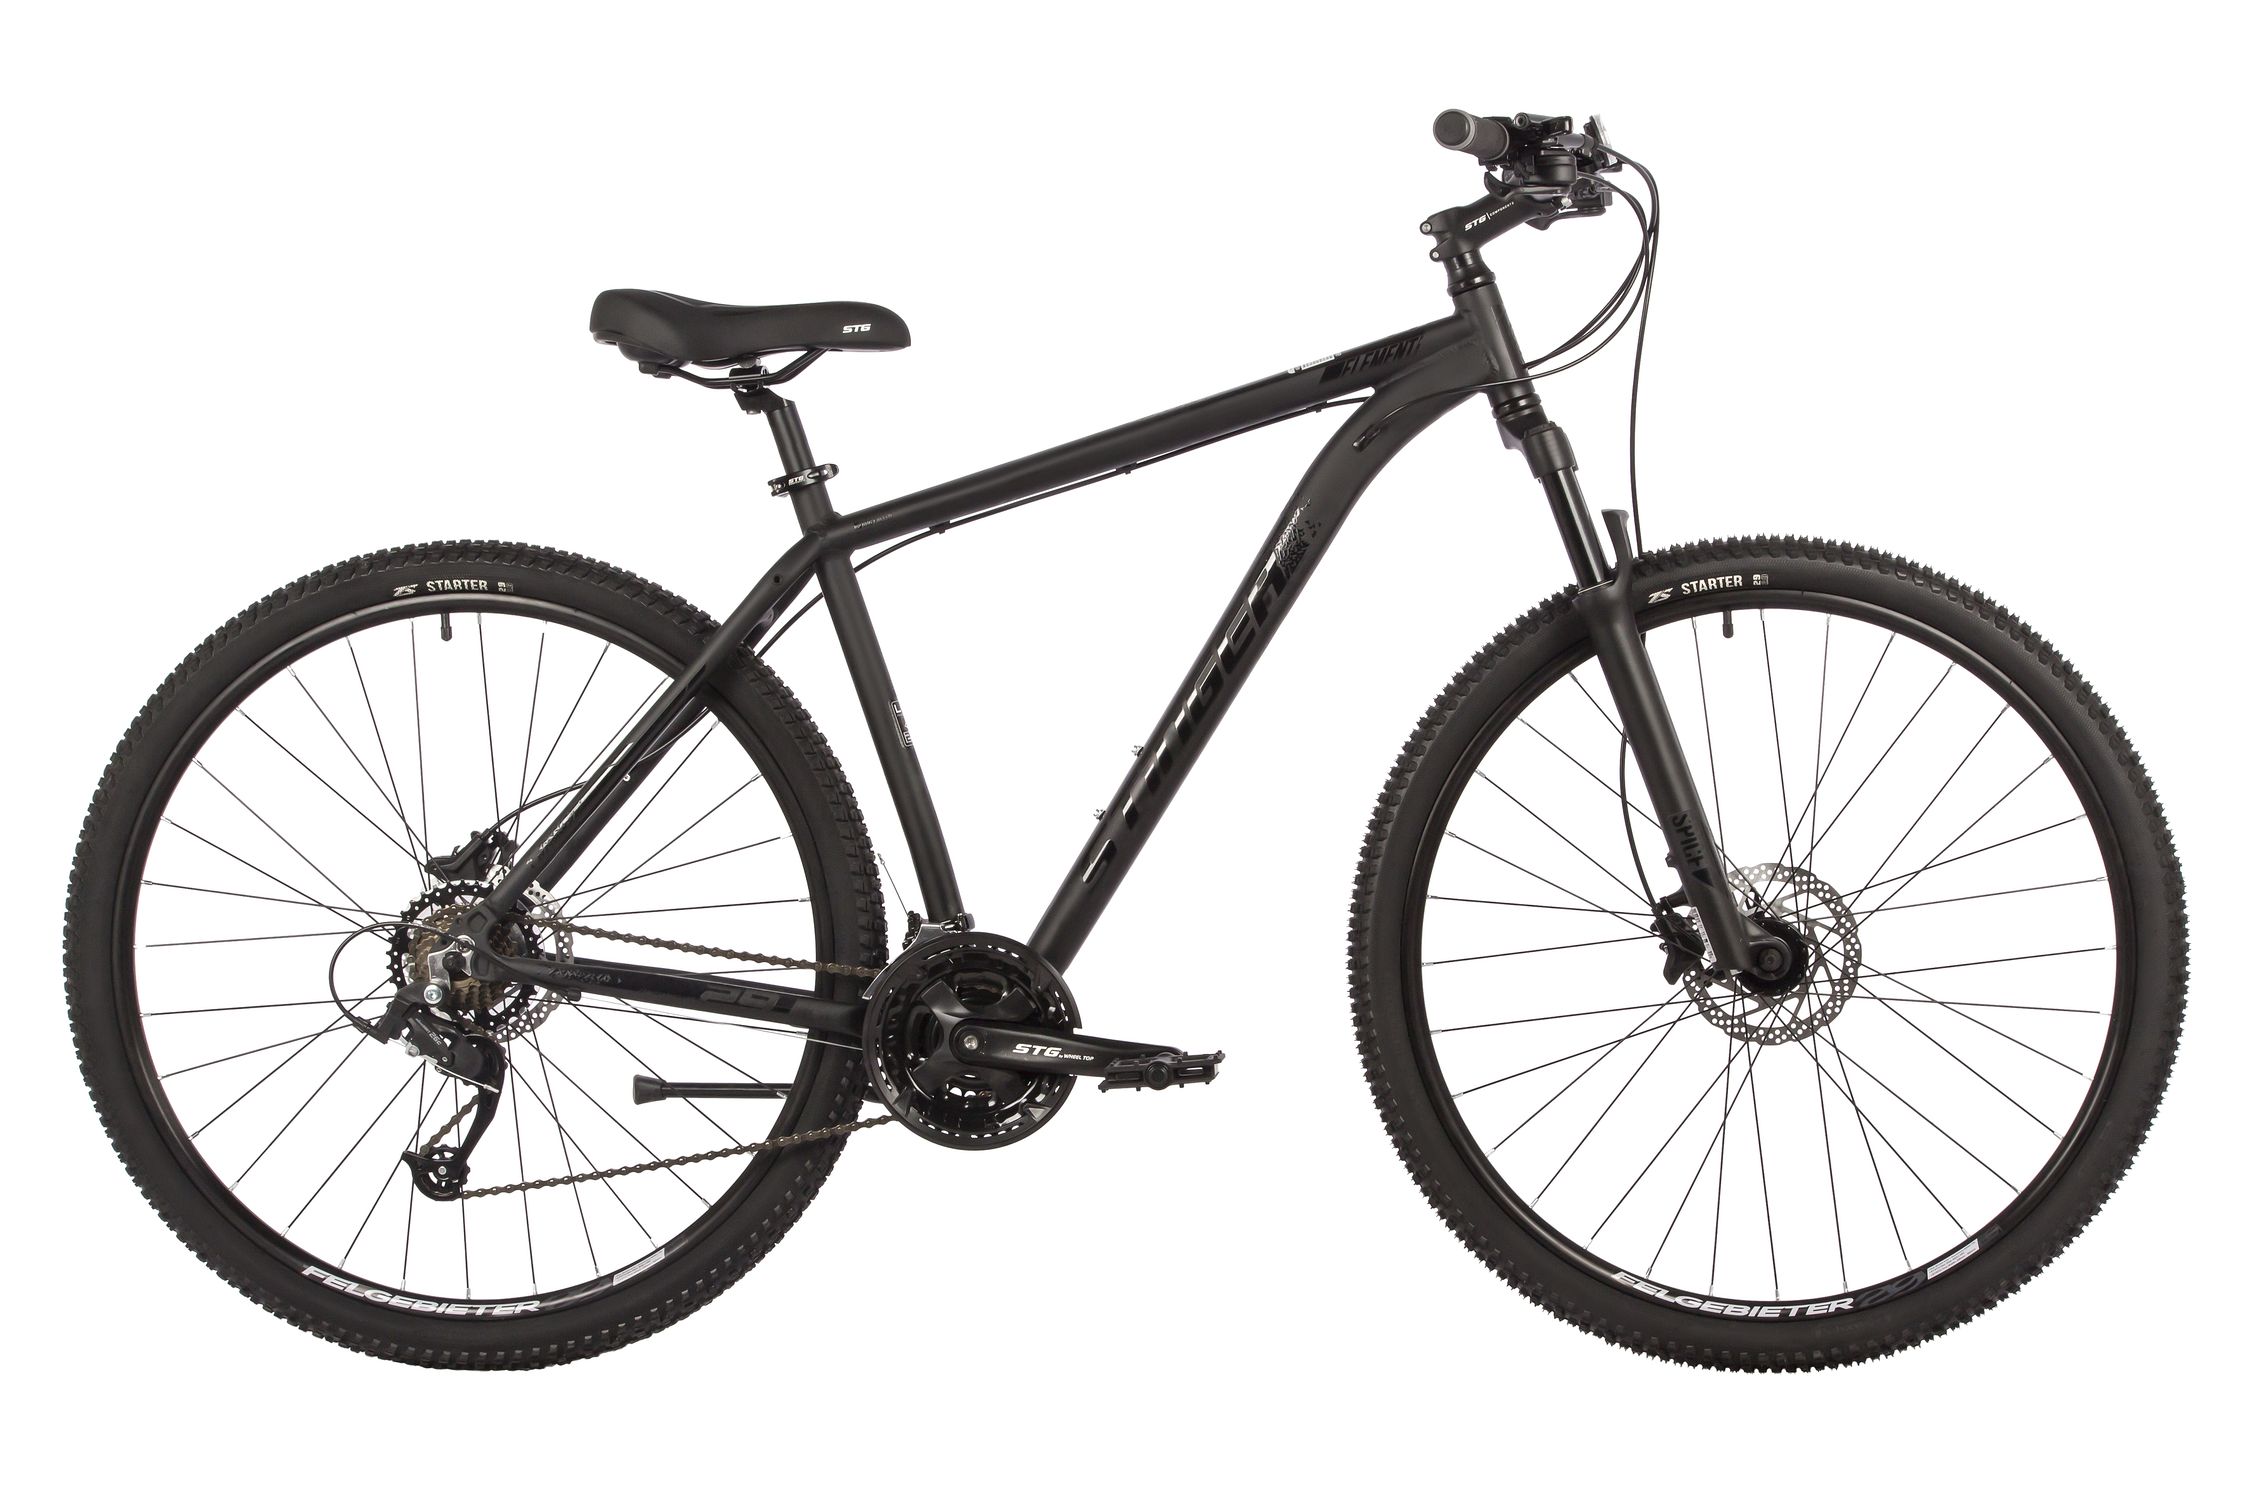  Отзывы о Горном велосипеде Stinger Element Pro SE 29 2022